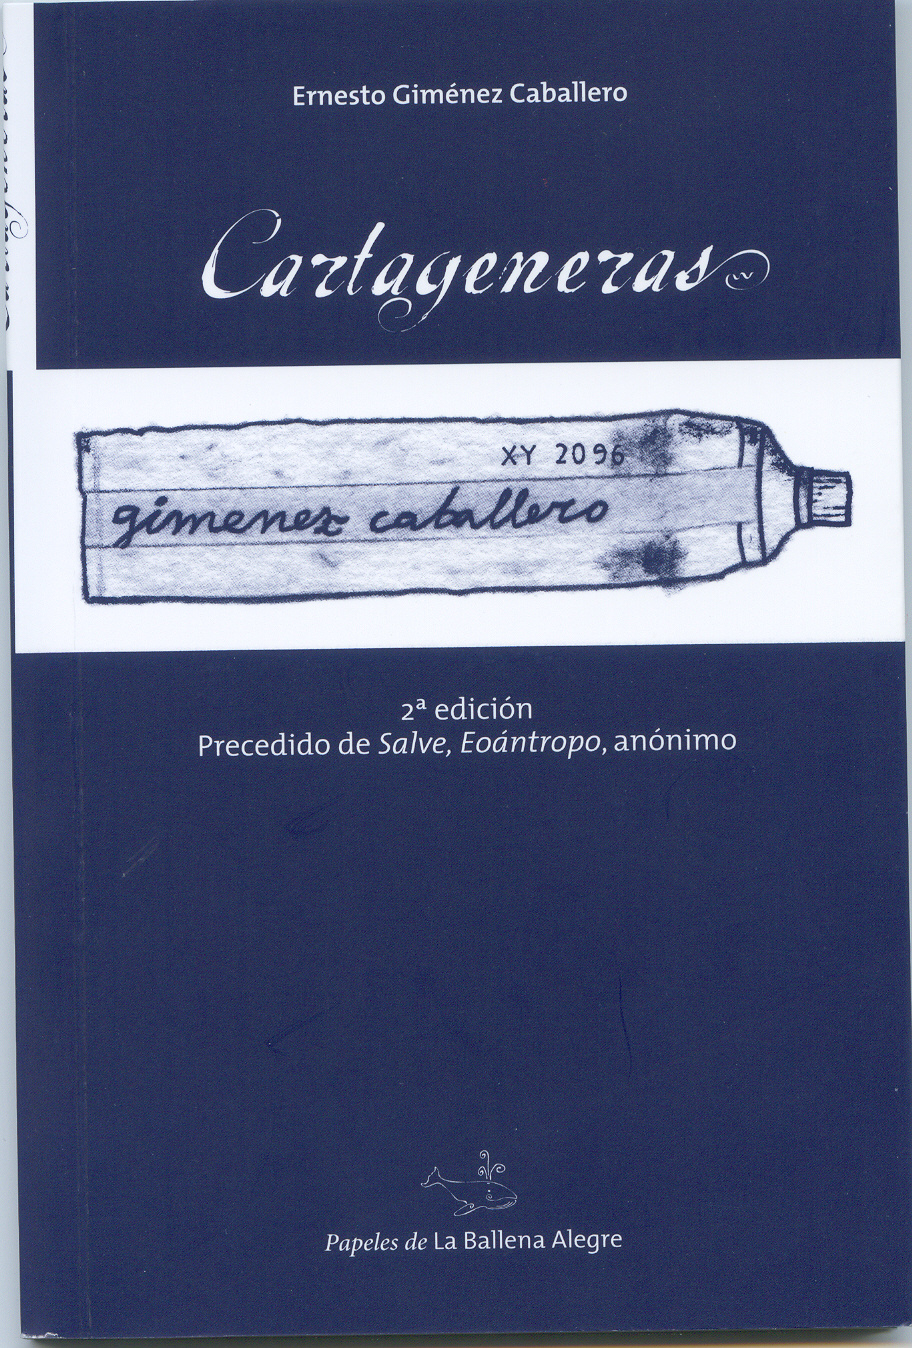 [Cartageneras+2007.jpg]